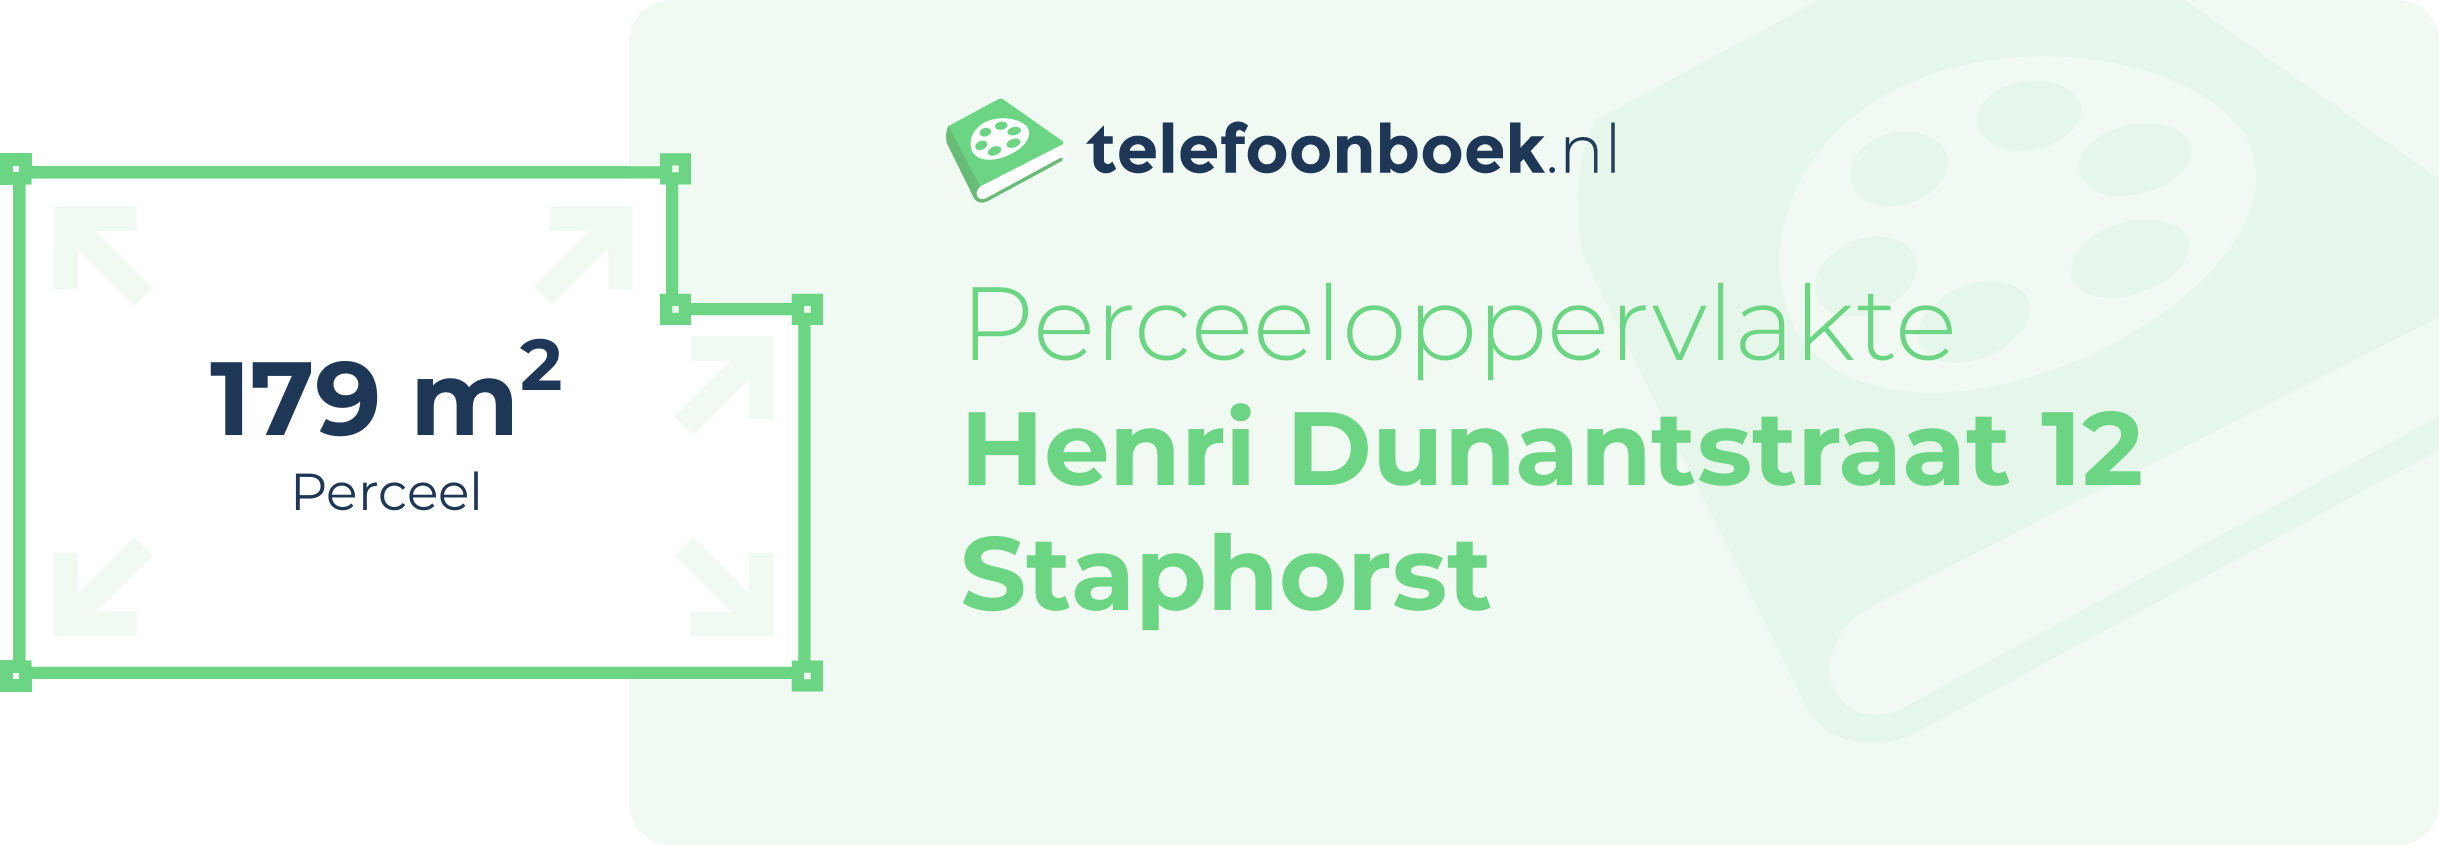 Perceeloppervlakte Henri Dunantstraat 12 Staphorst